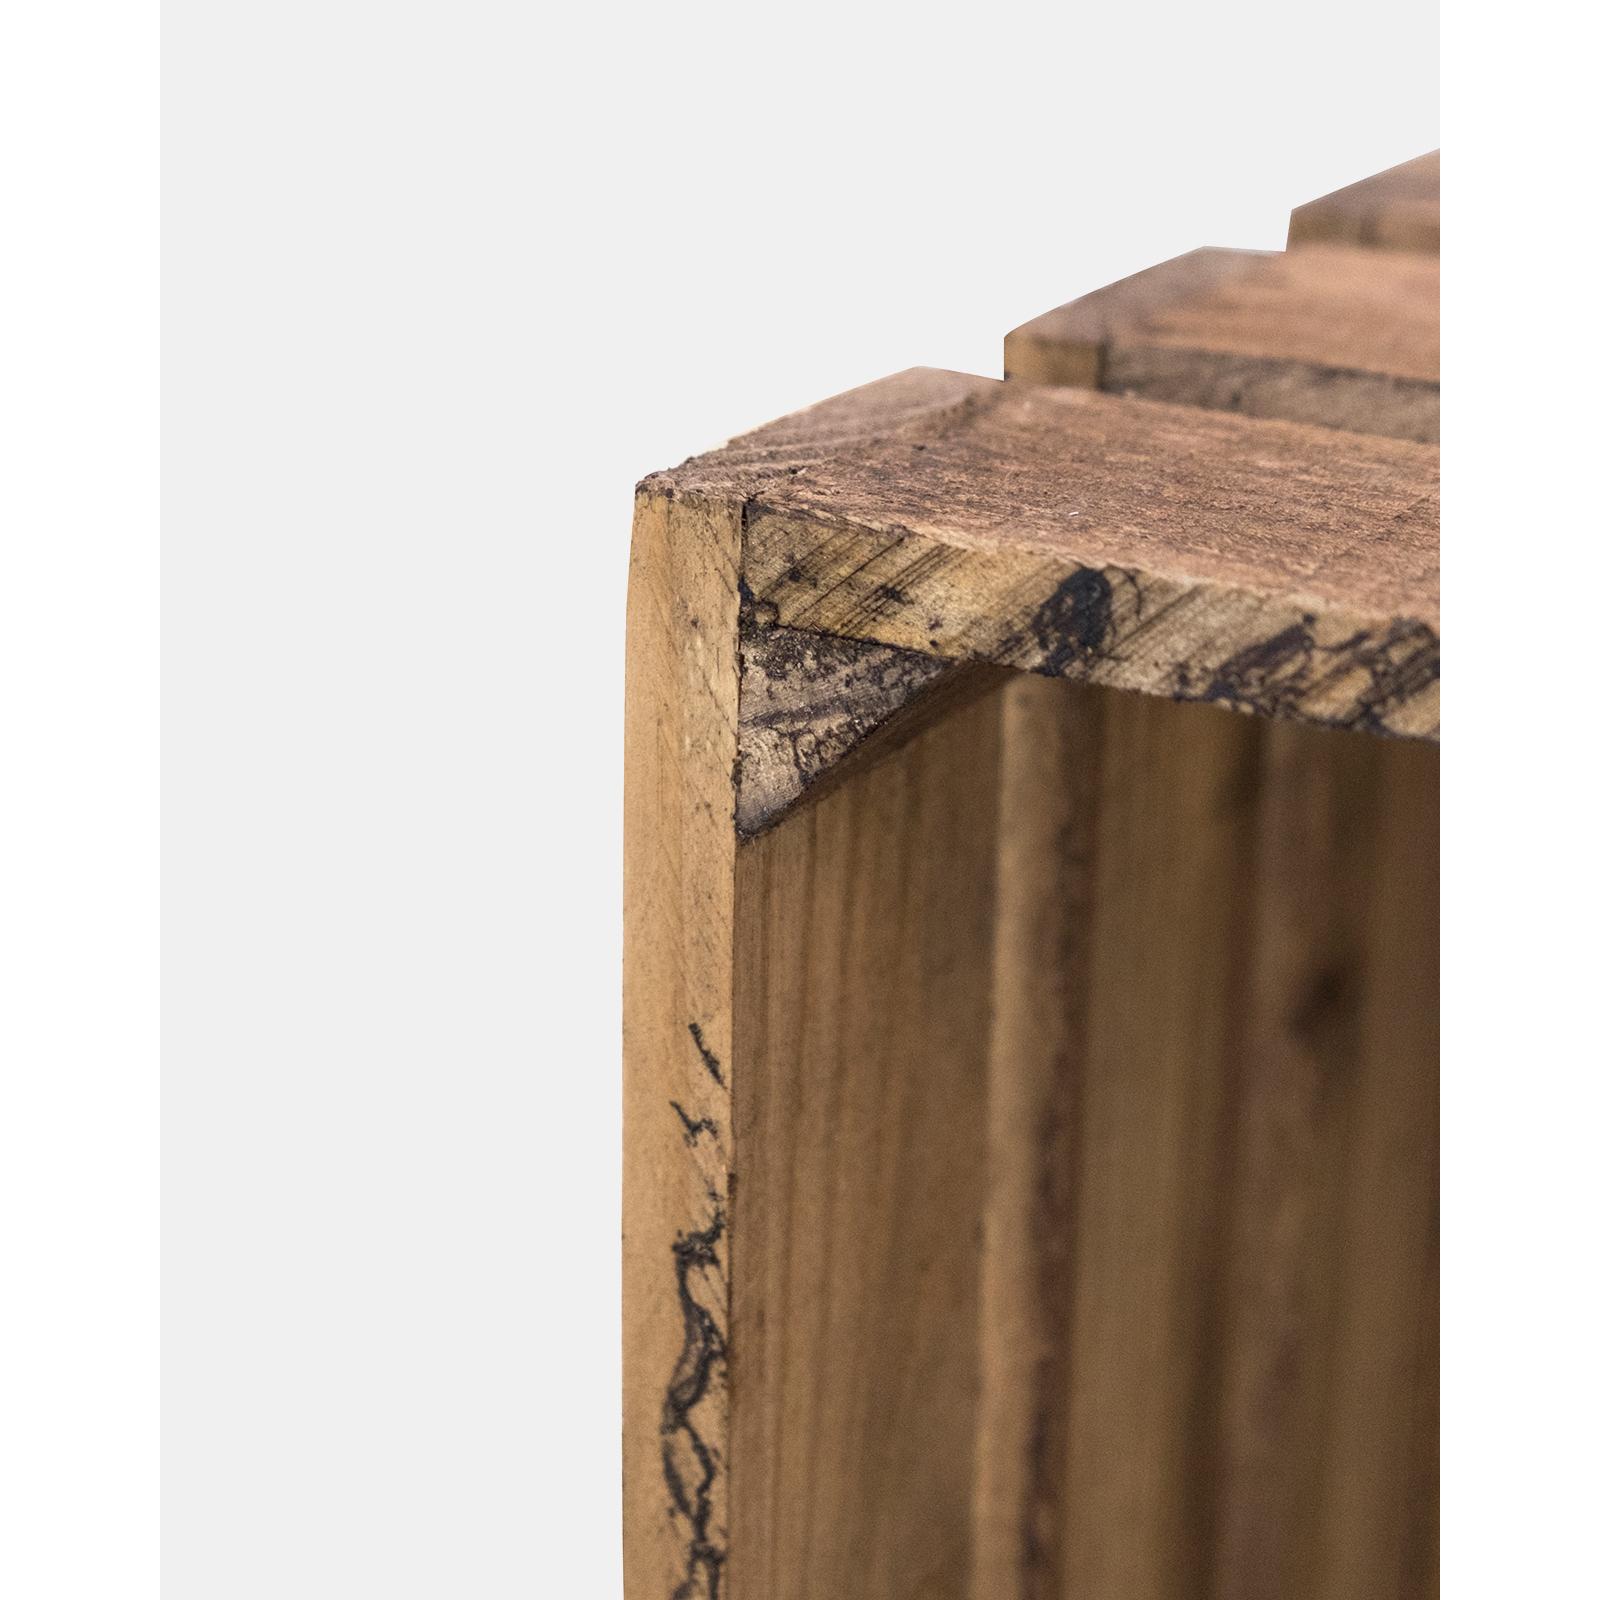 Caja elaborada con madera de pino gallego. Alto: 55 Largo: 29.5 Ancho: 25.5